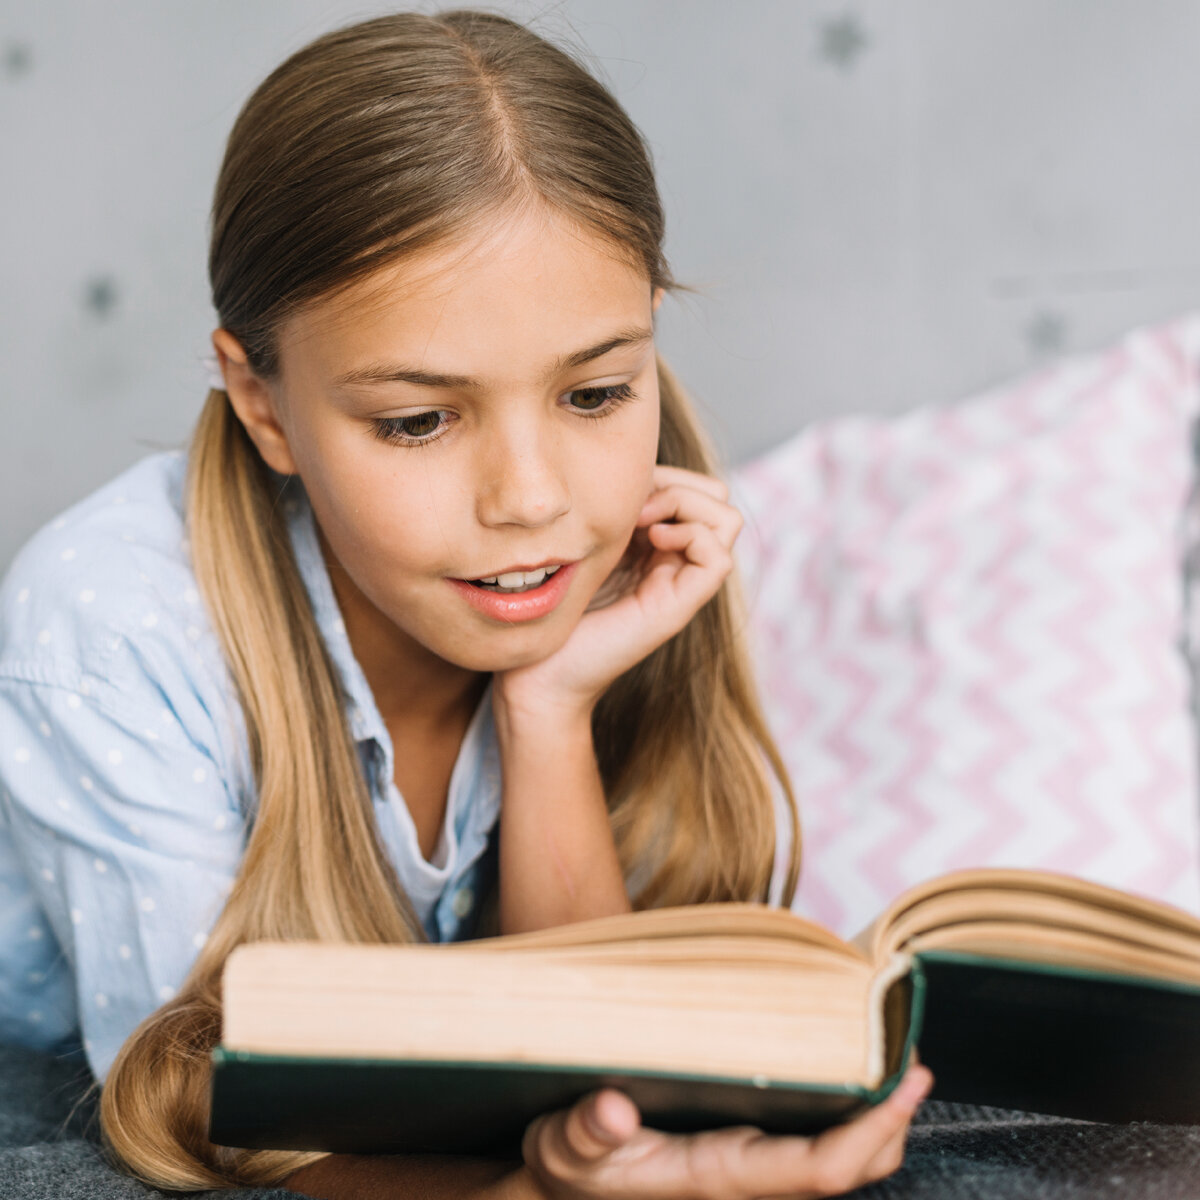 Важное умение для успешного чтения и понимания текста - умение выделять главное. Это навык, которым дети младшего школьного возраста обязательно должны овладеть.